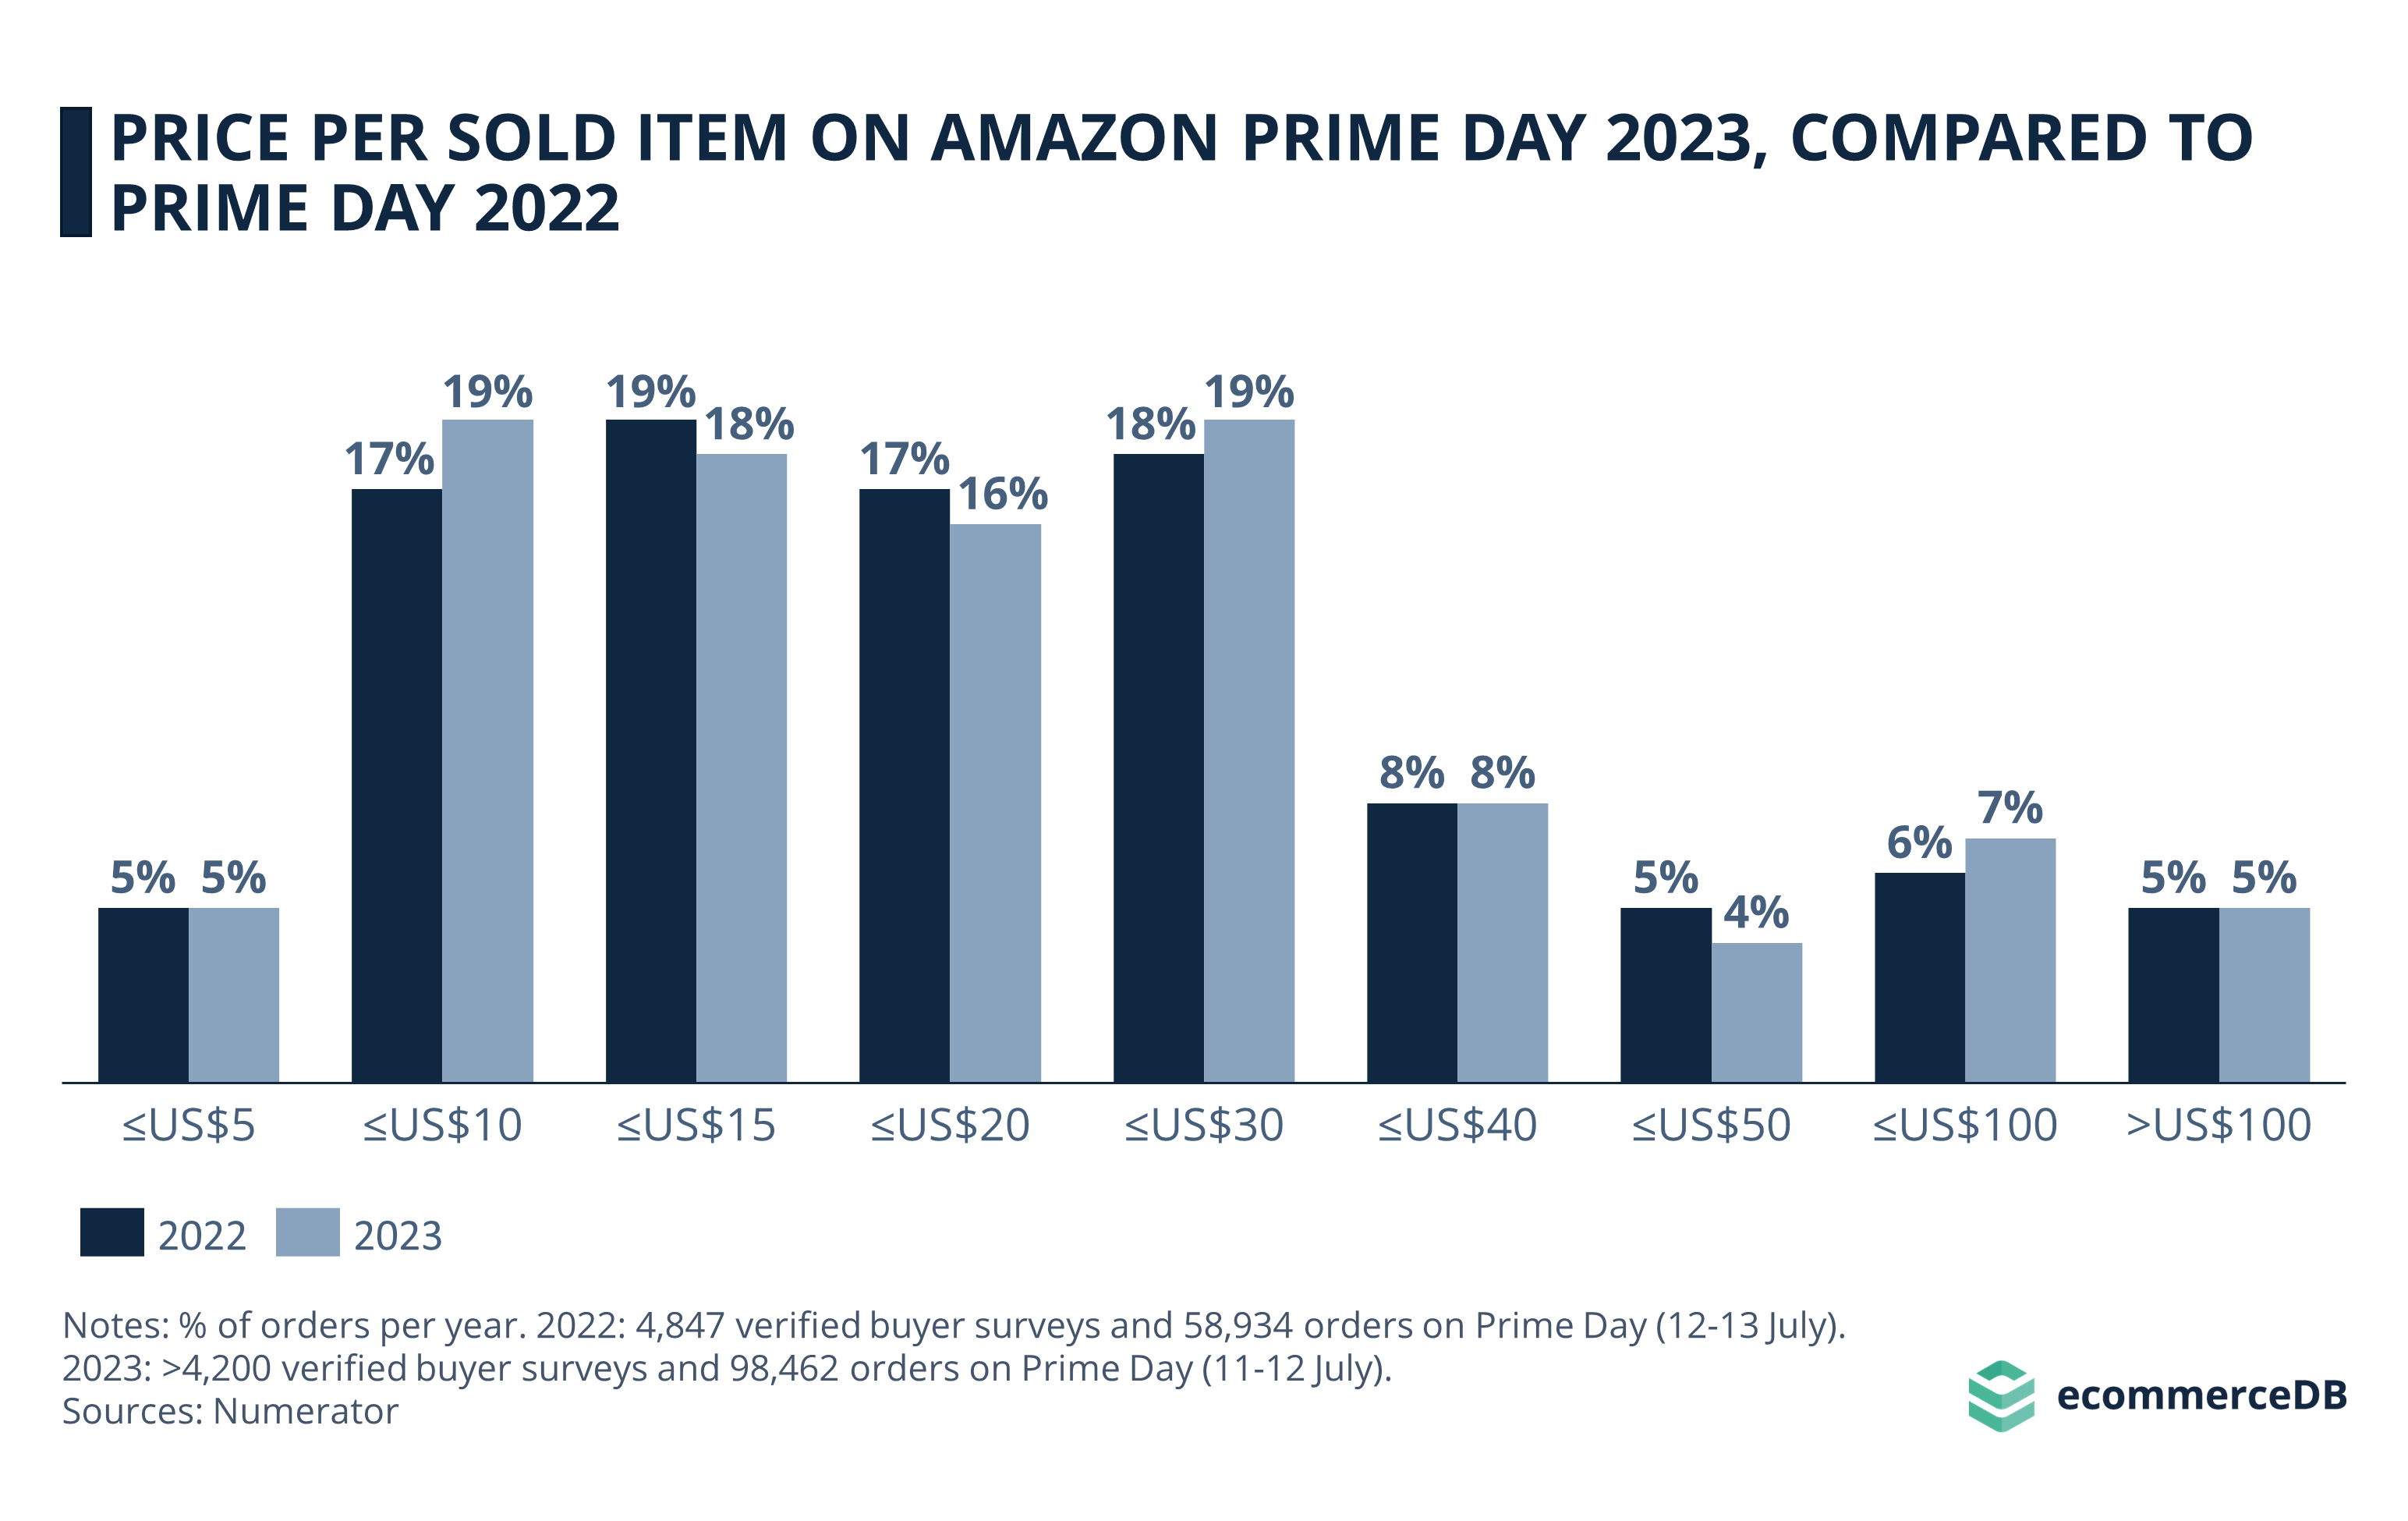 Amazon Prime Day 2023 Price per Item Sold vs 2022